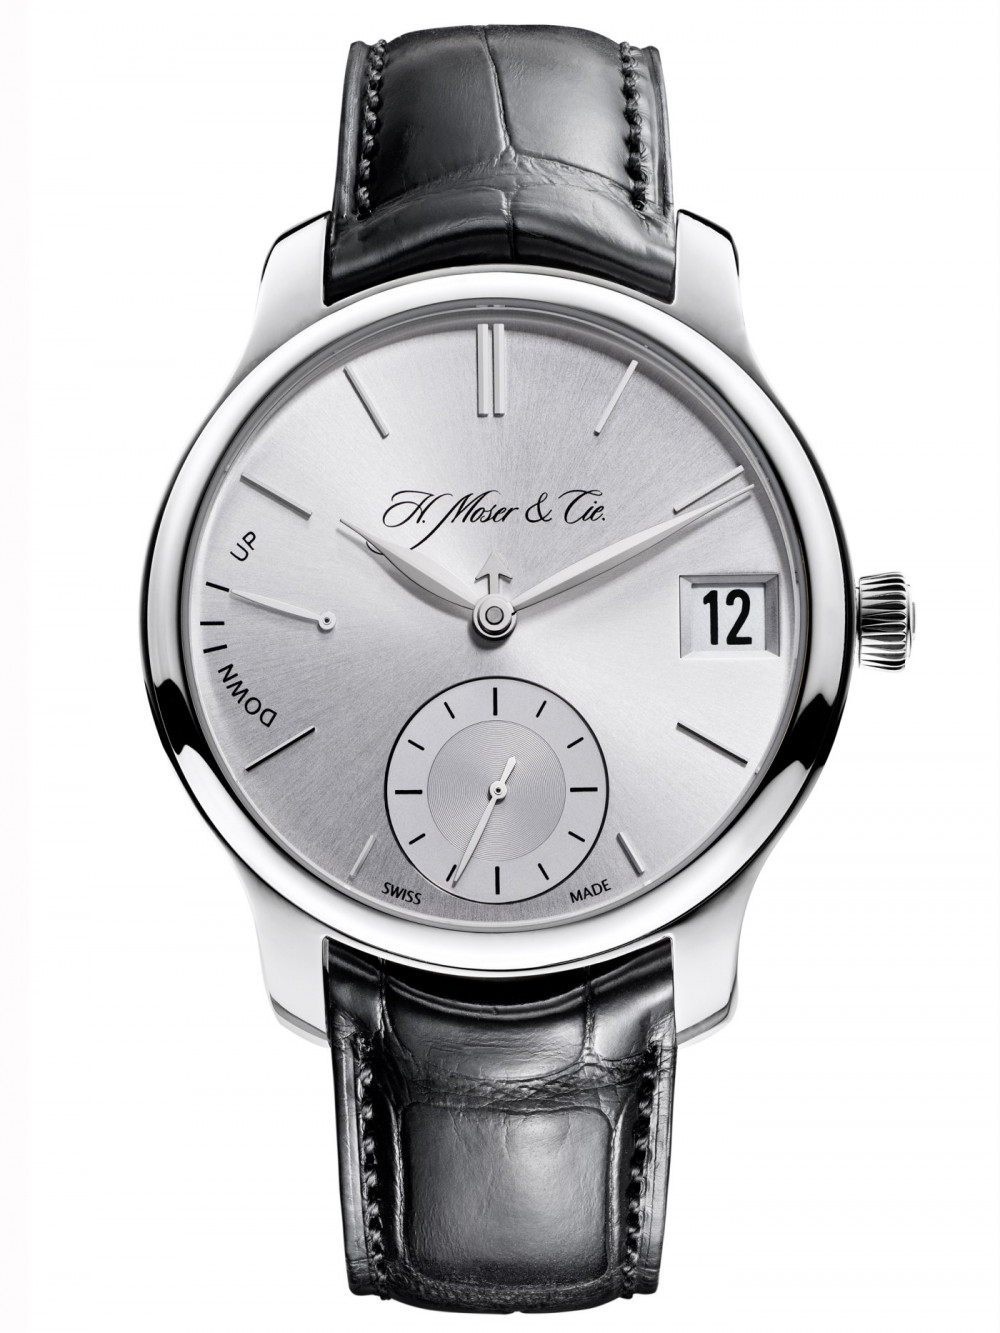 Zegarek firmy H. Moser & Cie, model Endeavour Perpetual Calendar Weissgold Rhodié